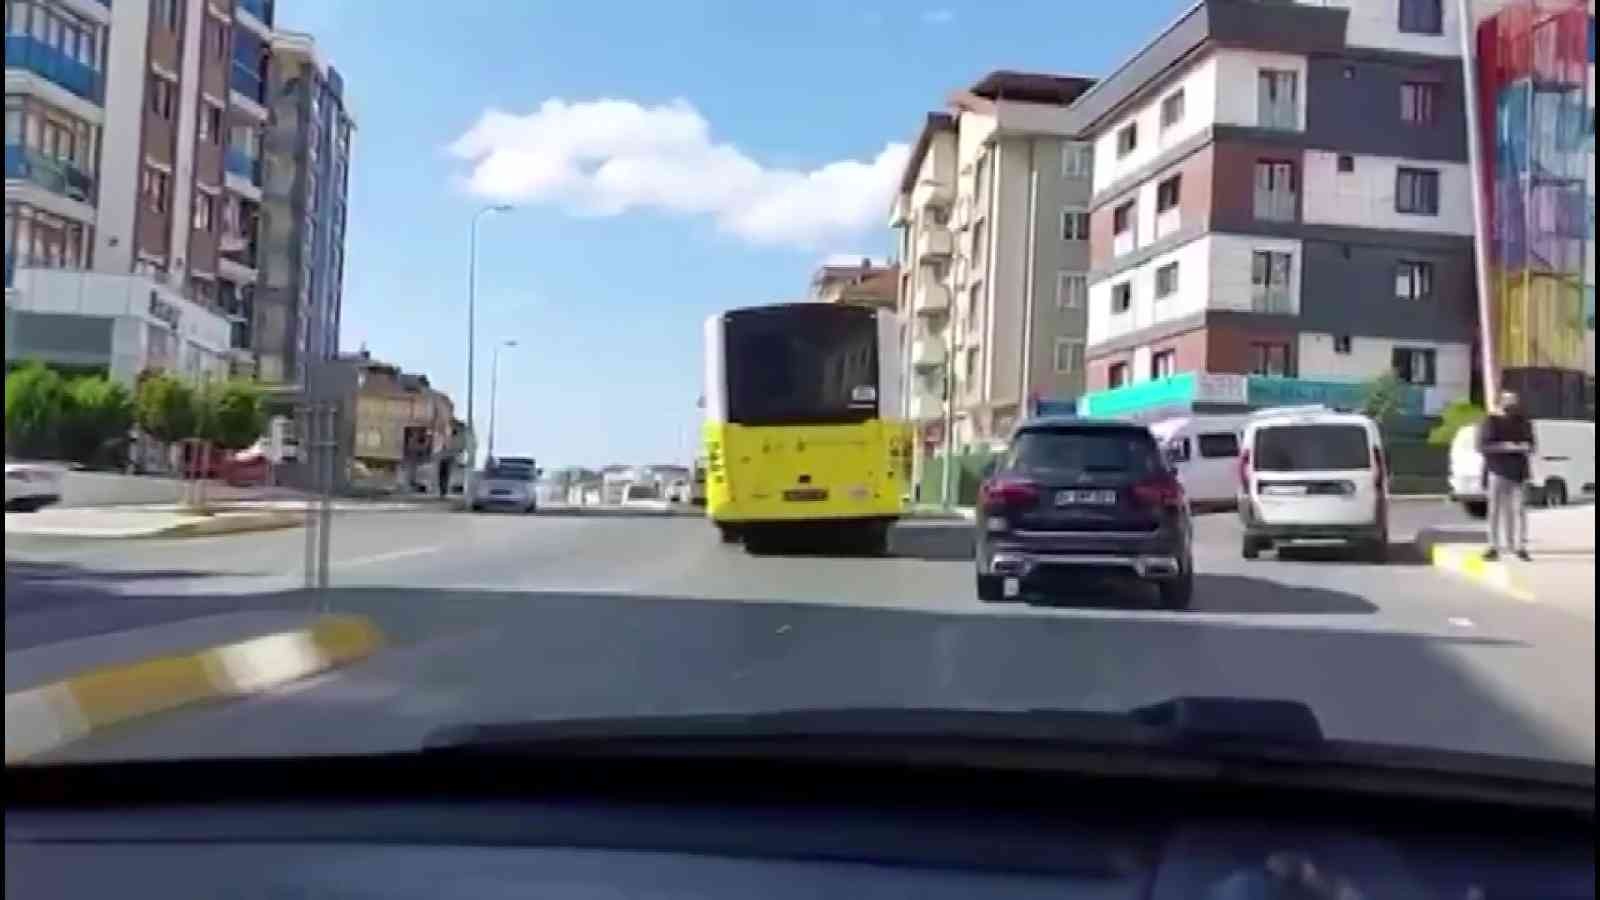 Arızalanan İETT otobüsü Pendik’te yolun ortasında kaldı #istanbul